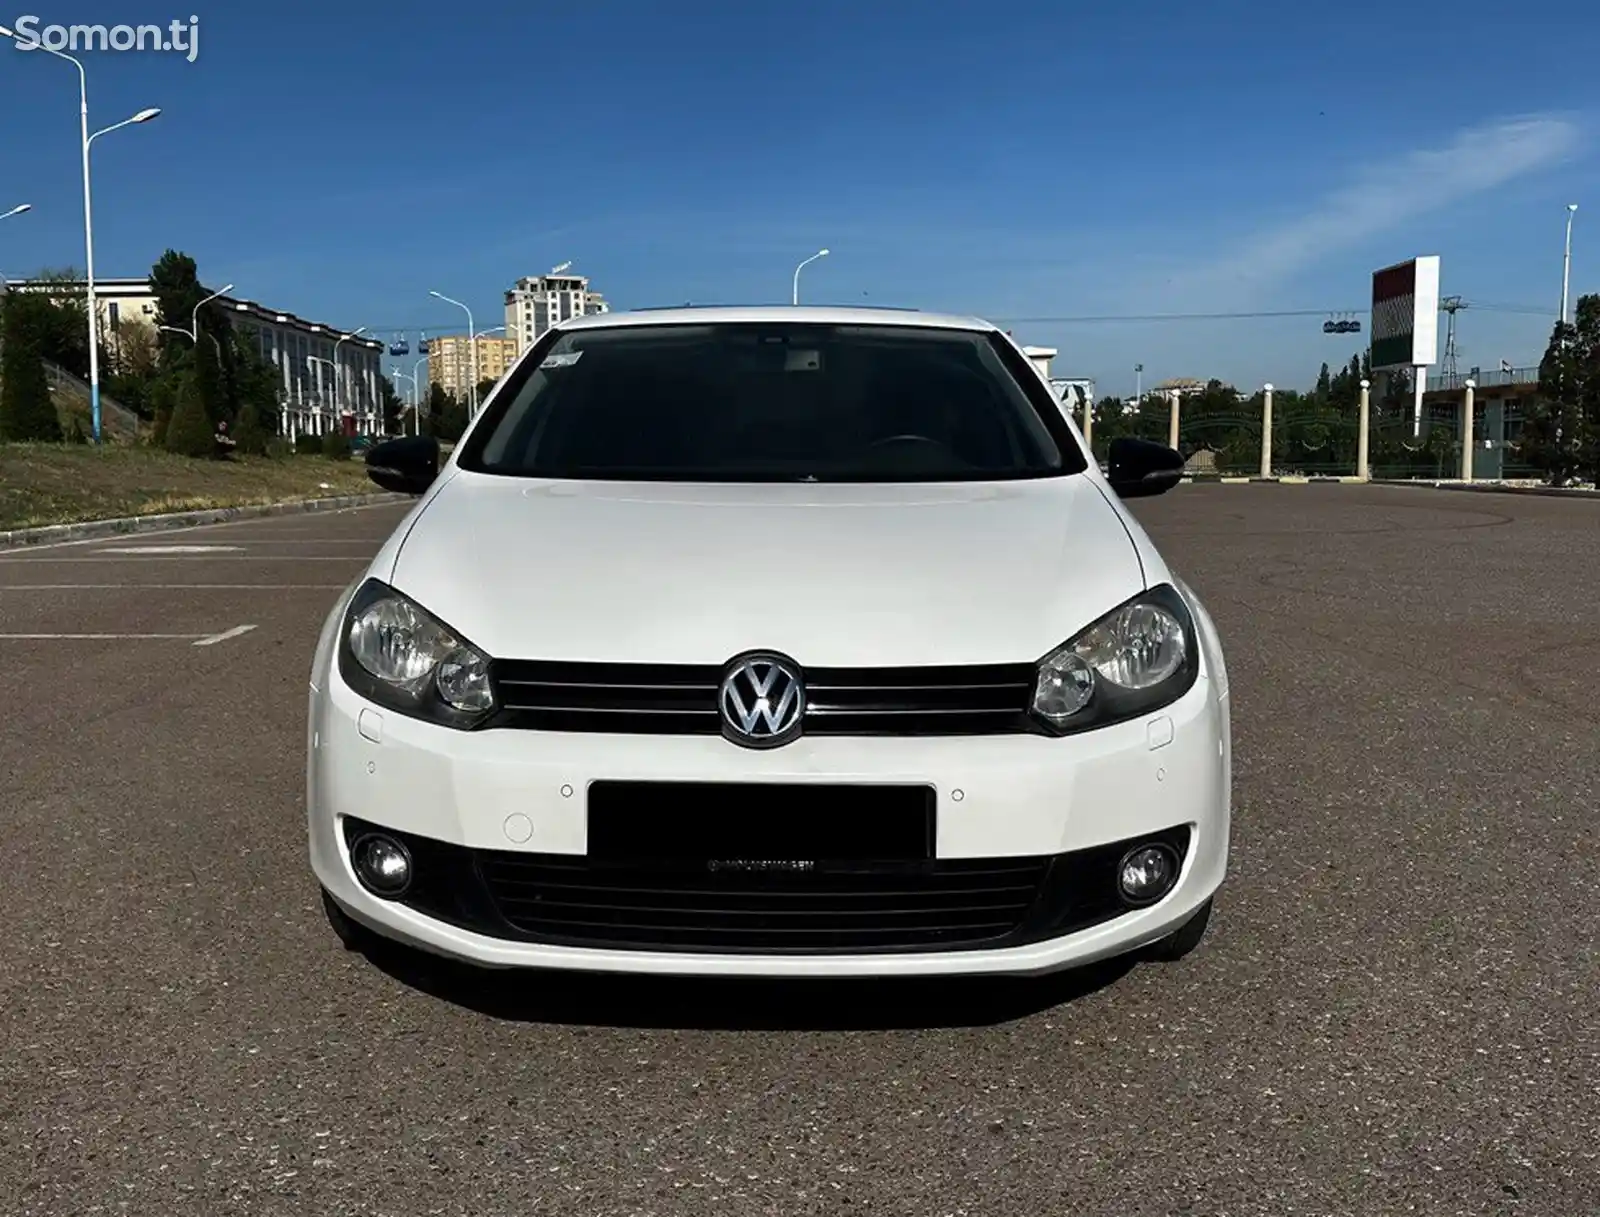 Volkswagen Golf, 2010-2